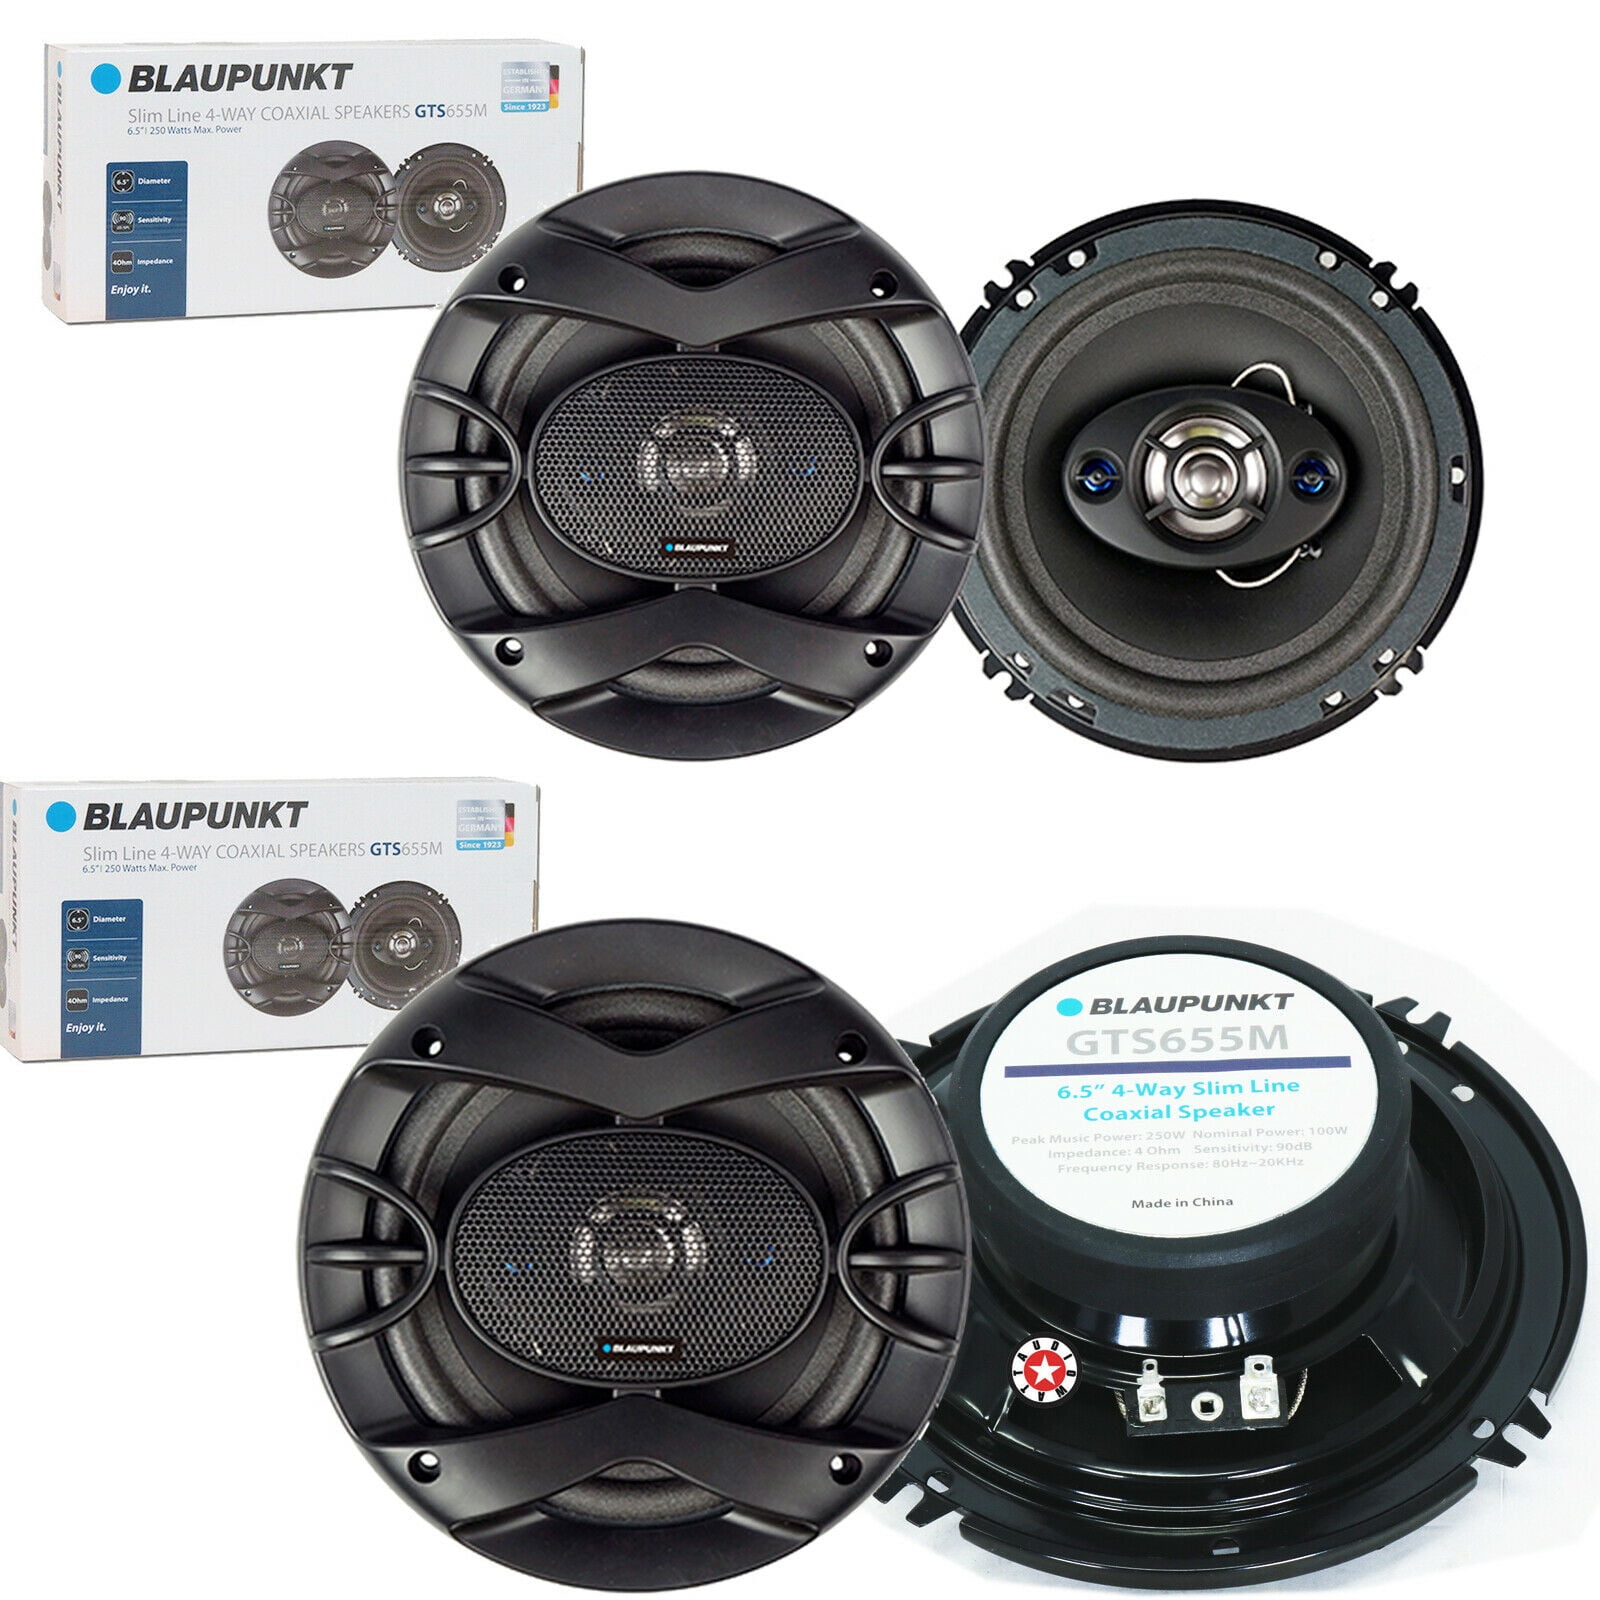 Blaupunkt GTX690 6X9" 4-Way Coaxial Speaker 450W Max 